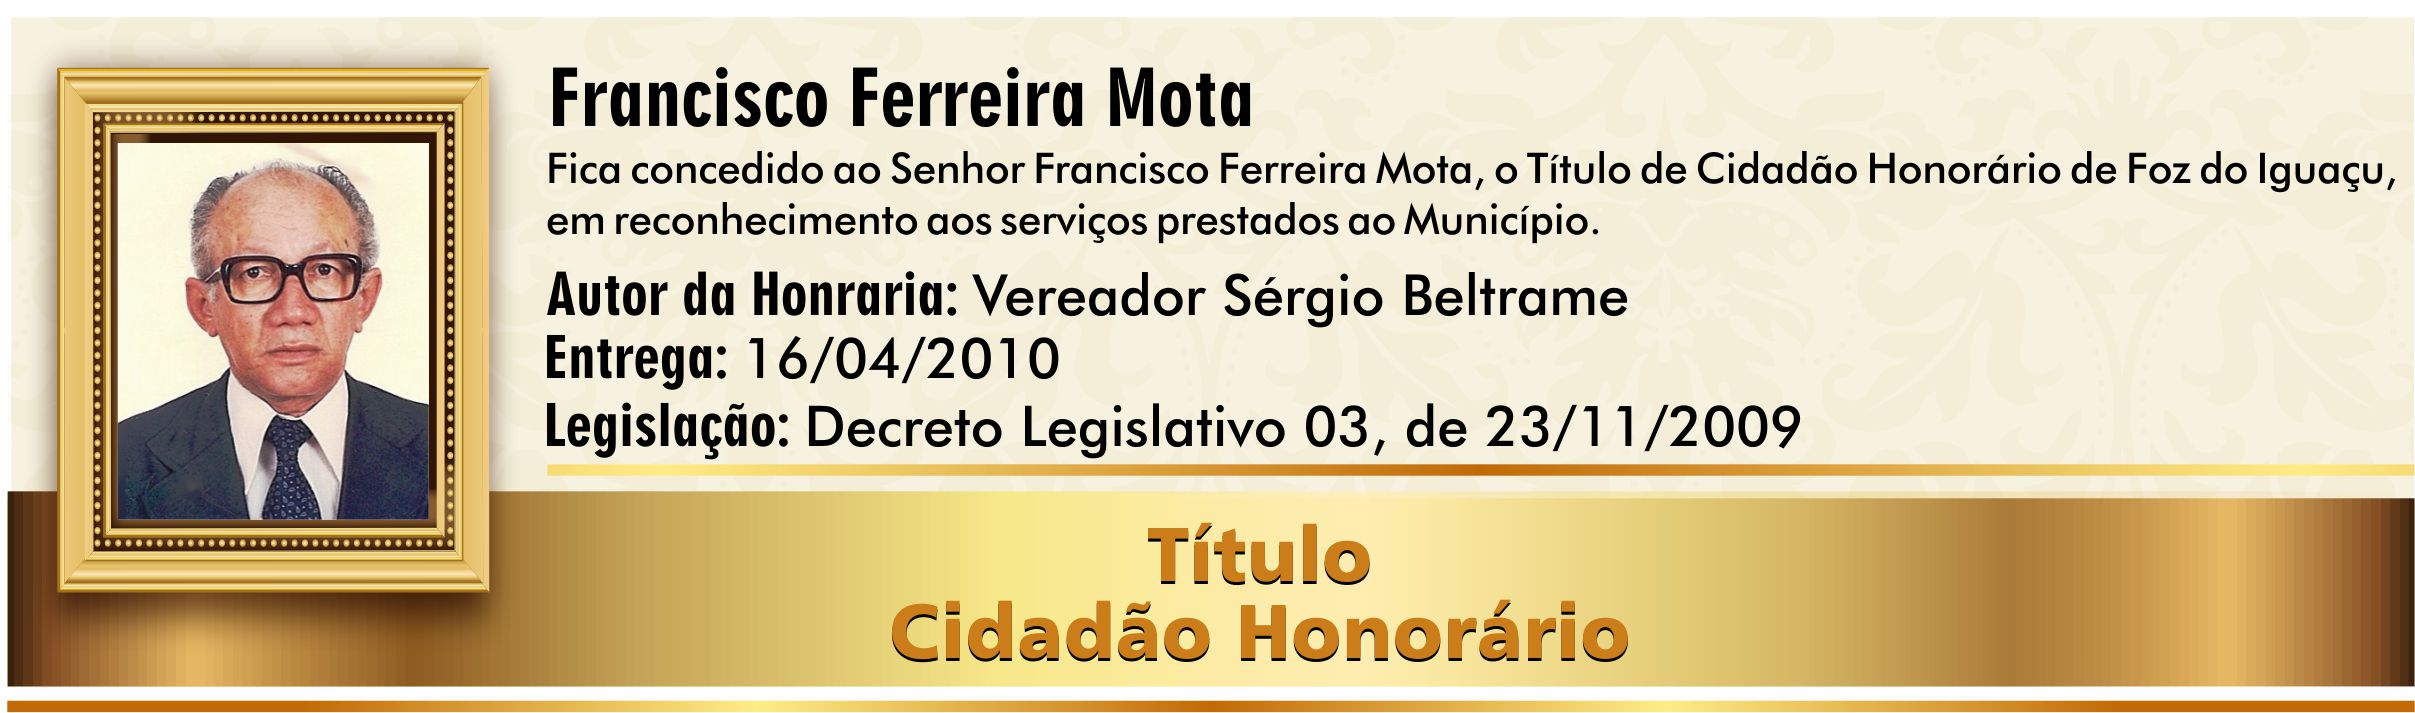 Francisco Ferreira Mota